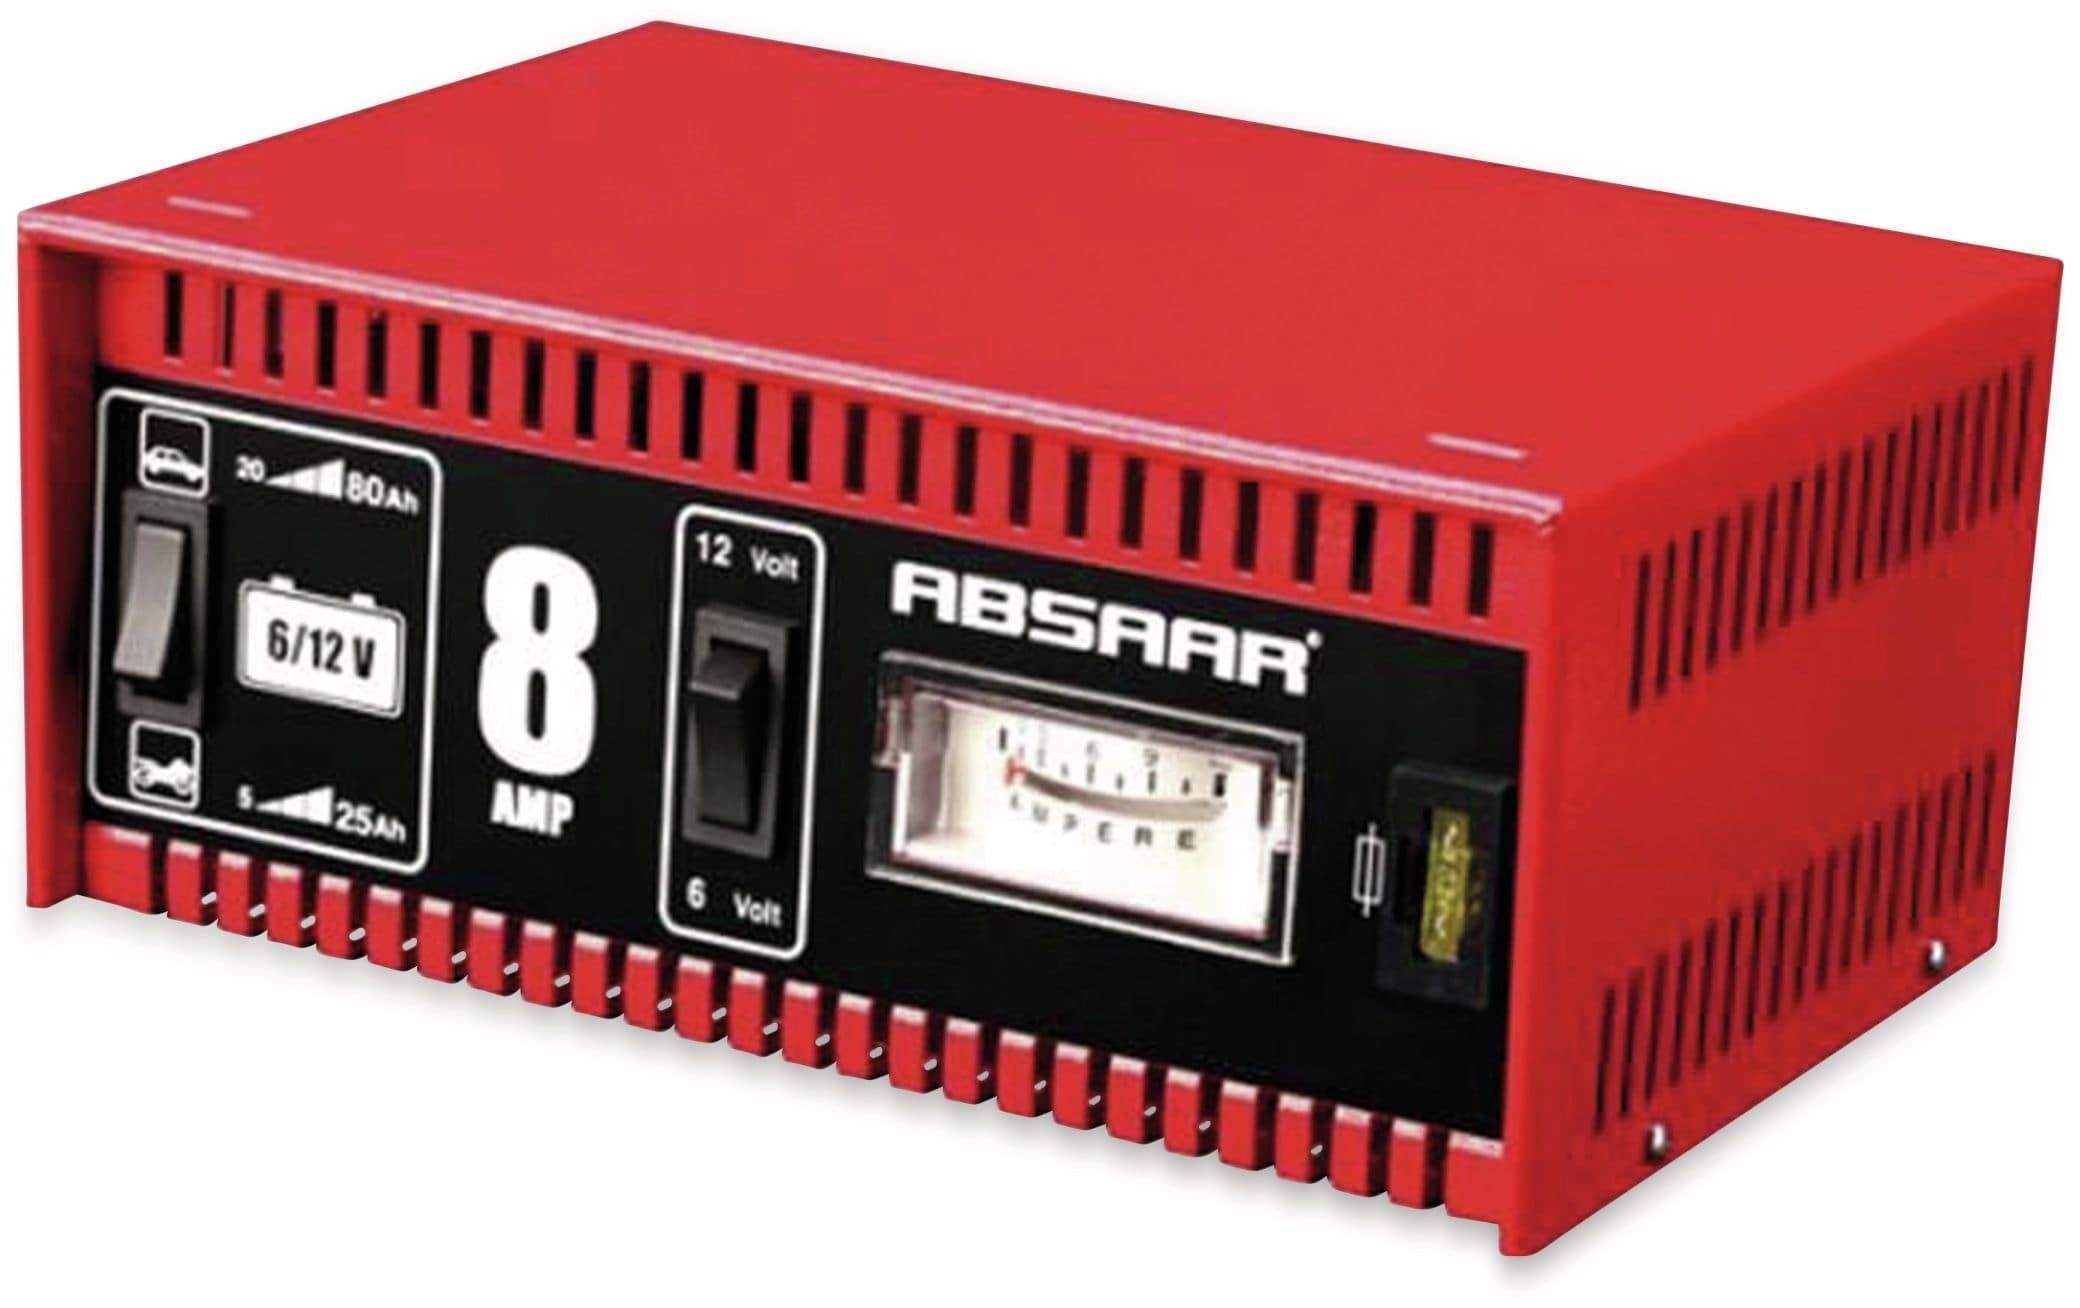 A Batterie Batterie-Ladegerät Absaar 6/12 ABSAAR 8 V-